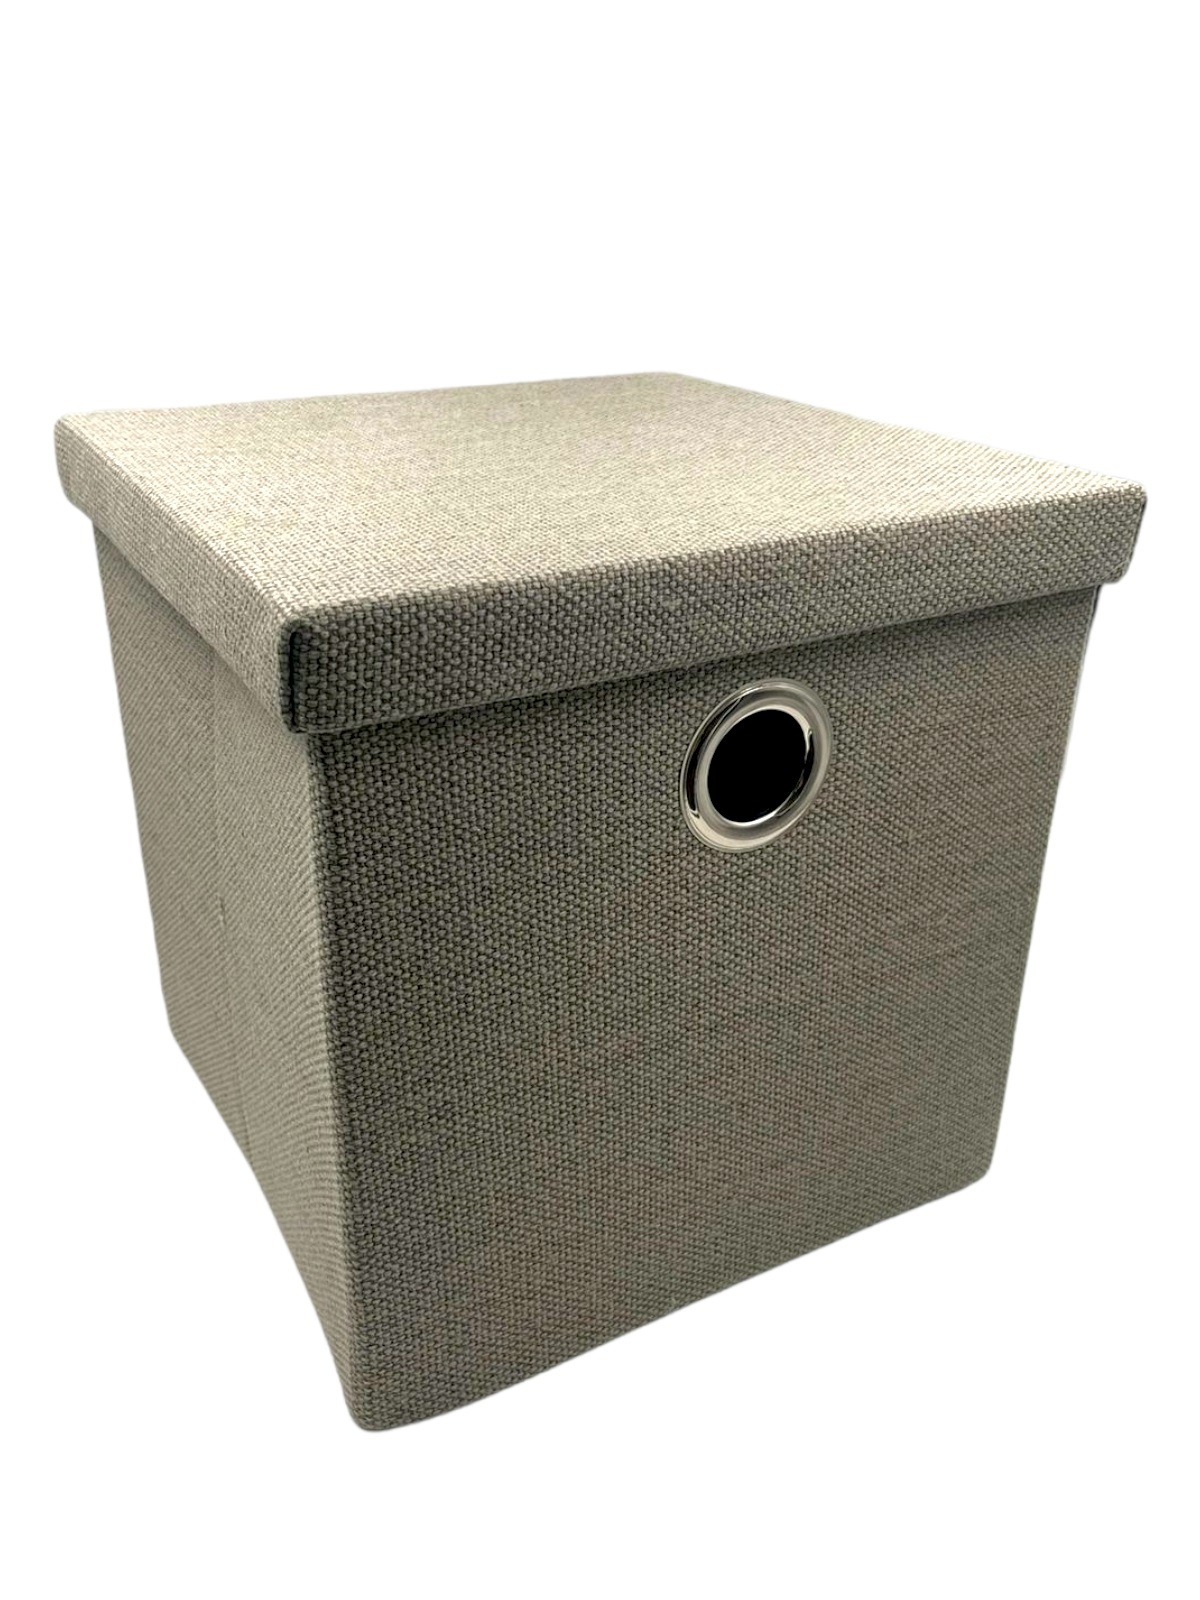 Мощный подкладка коробки для хранения ткани по отличным ценам - ремонты-бмв.рф